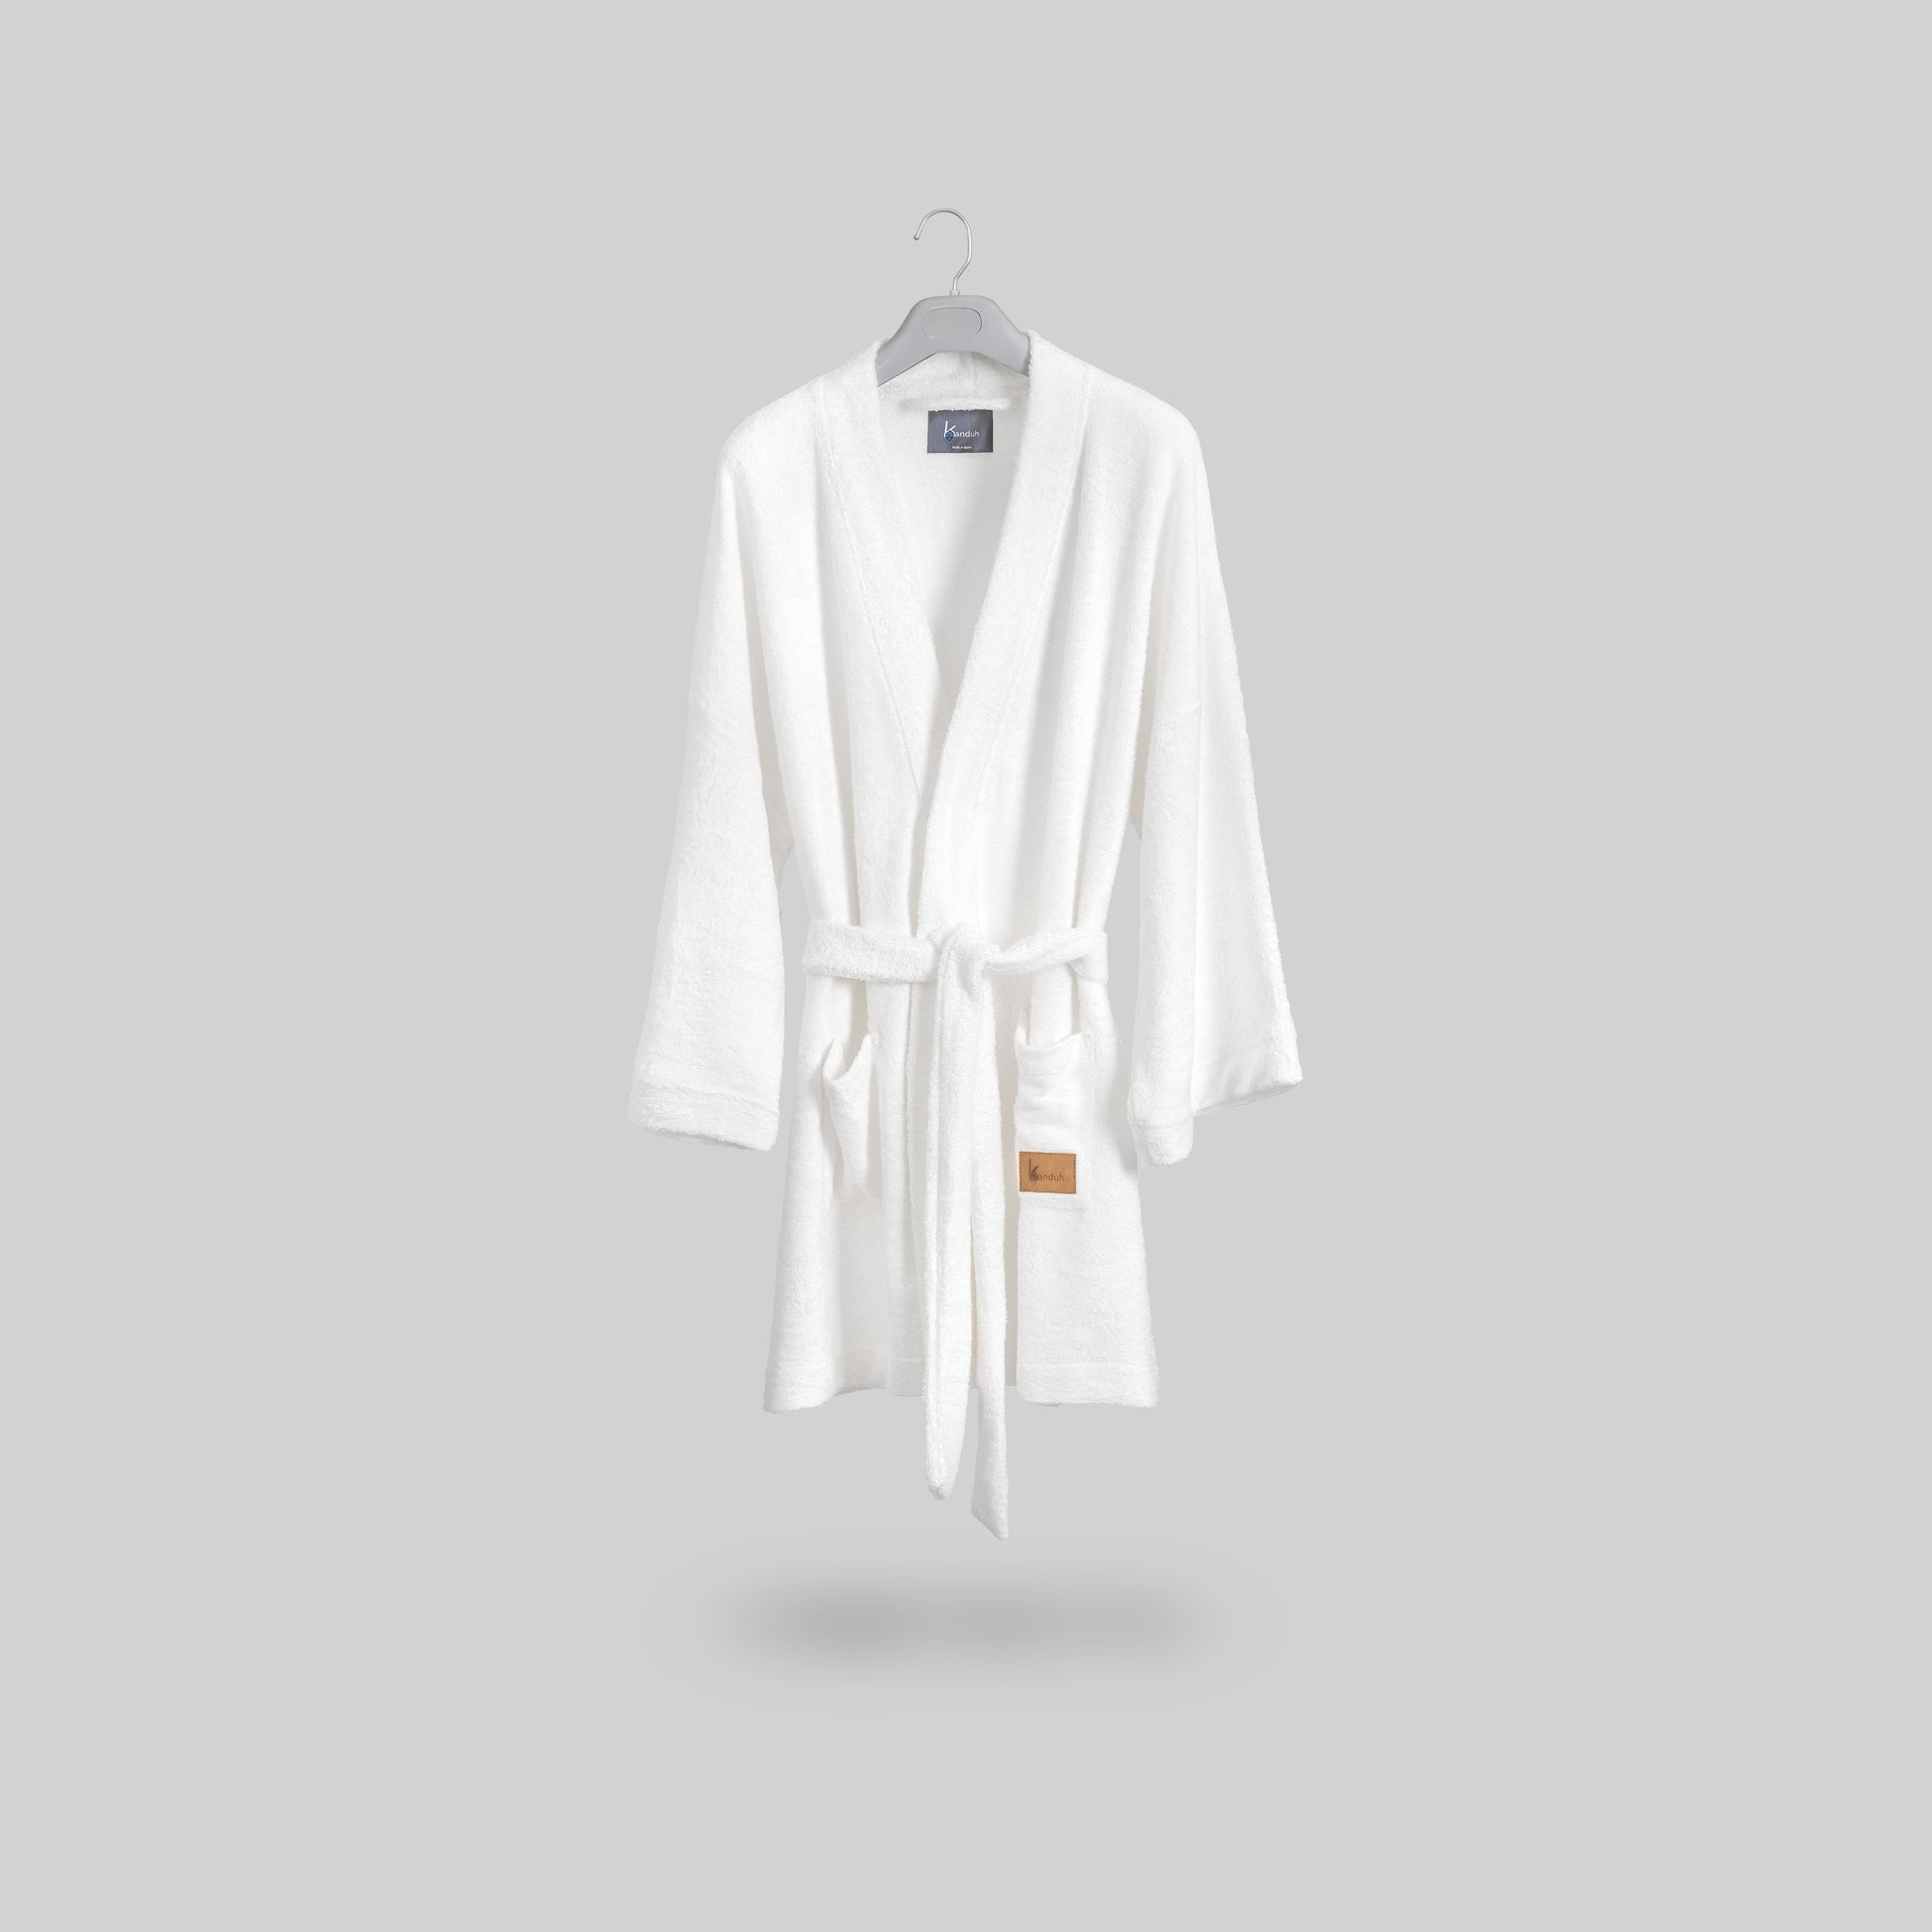 “Albornoz Sento” Albornoz corto tipo kimono en tejido de rizo de bambú, color blanco